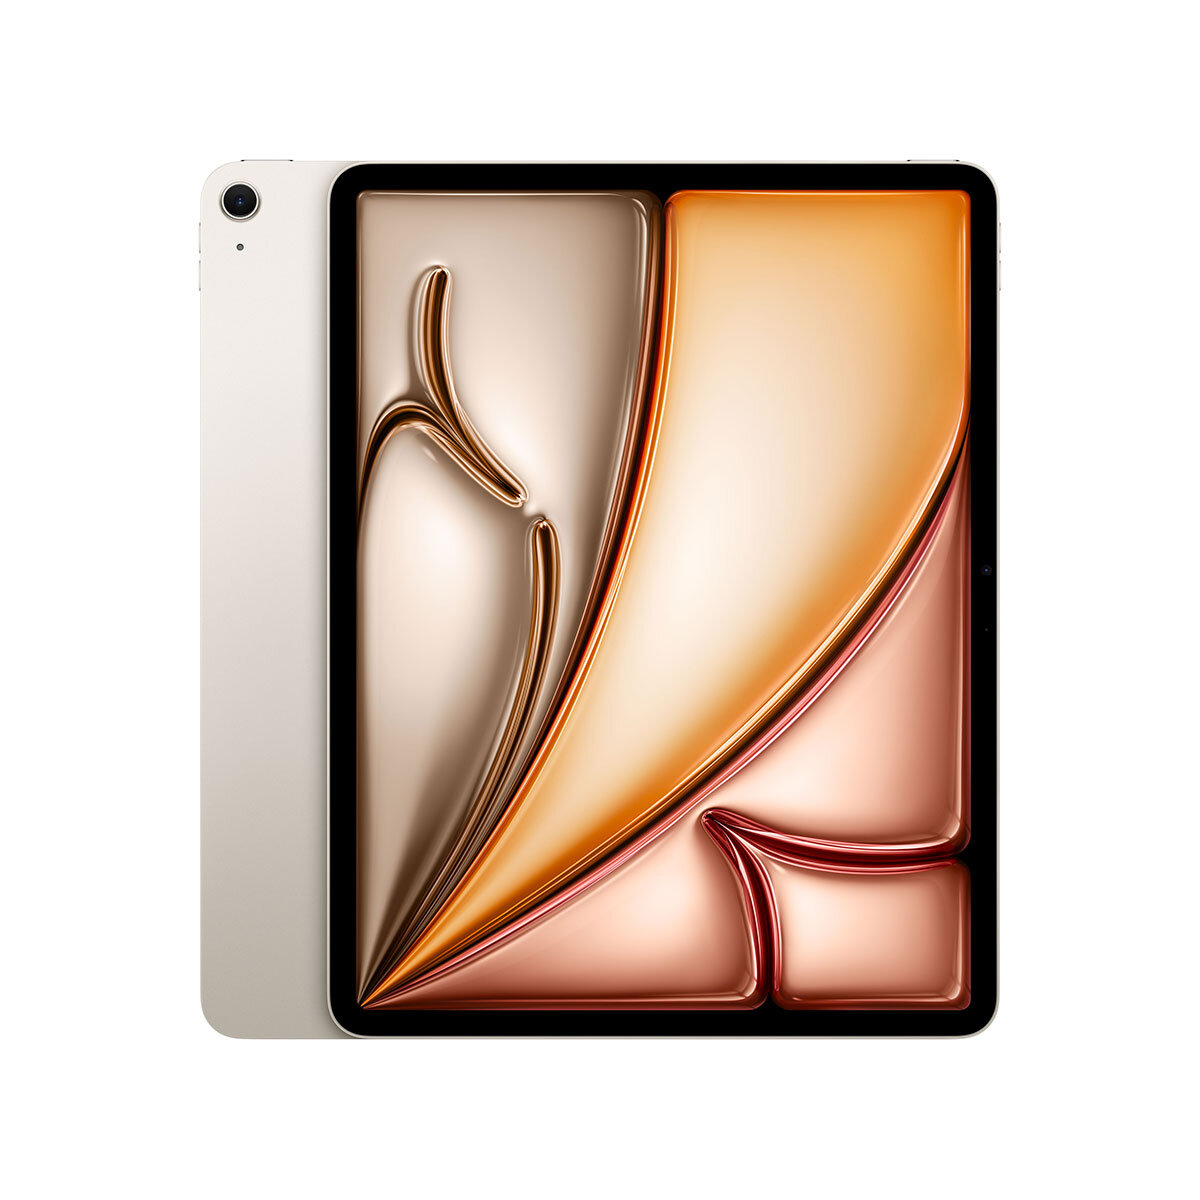 Apple iPad Air, 13 Inch, WiFi, 128GB in Space Grey, MV273NF/A